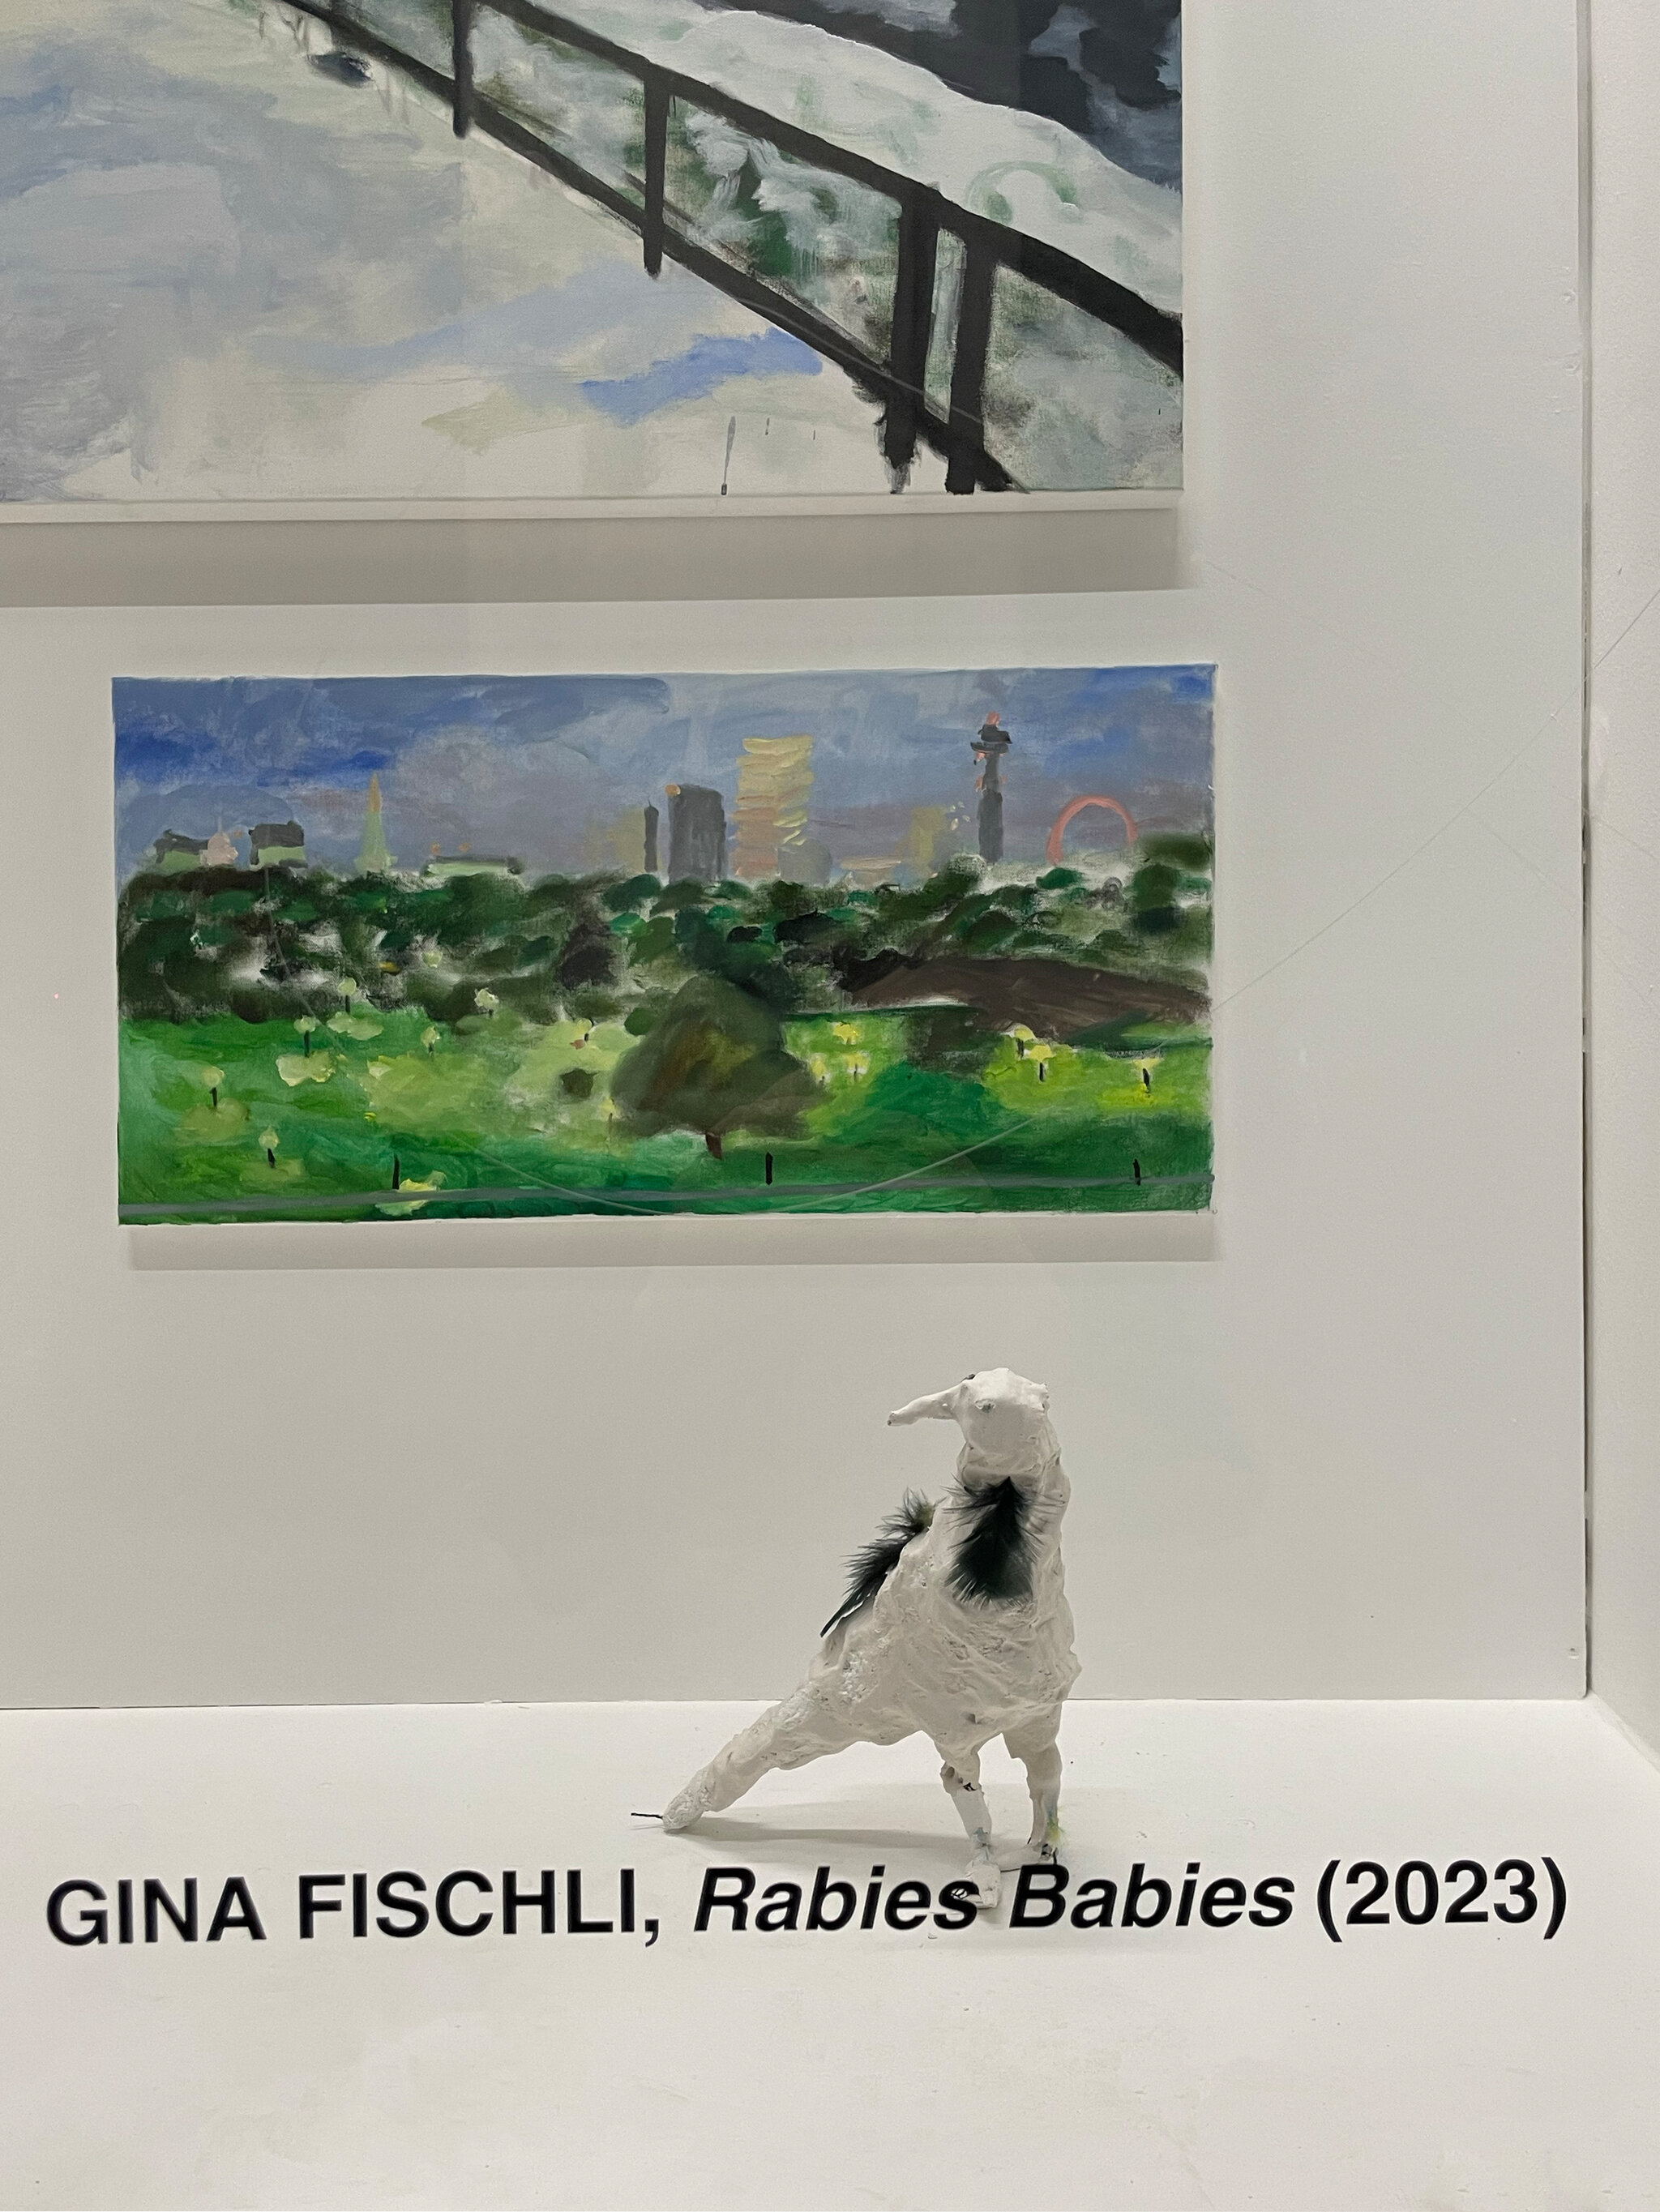 Rabies Babies, DAS GERICHT, Frankfurt am Main, 2023